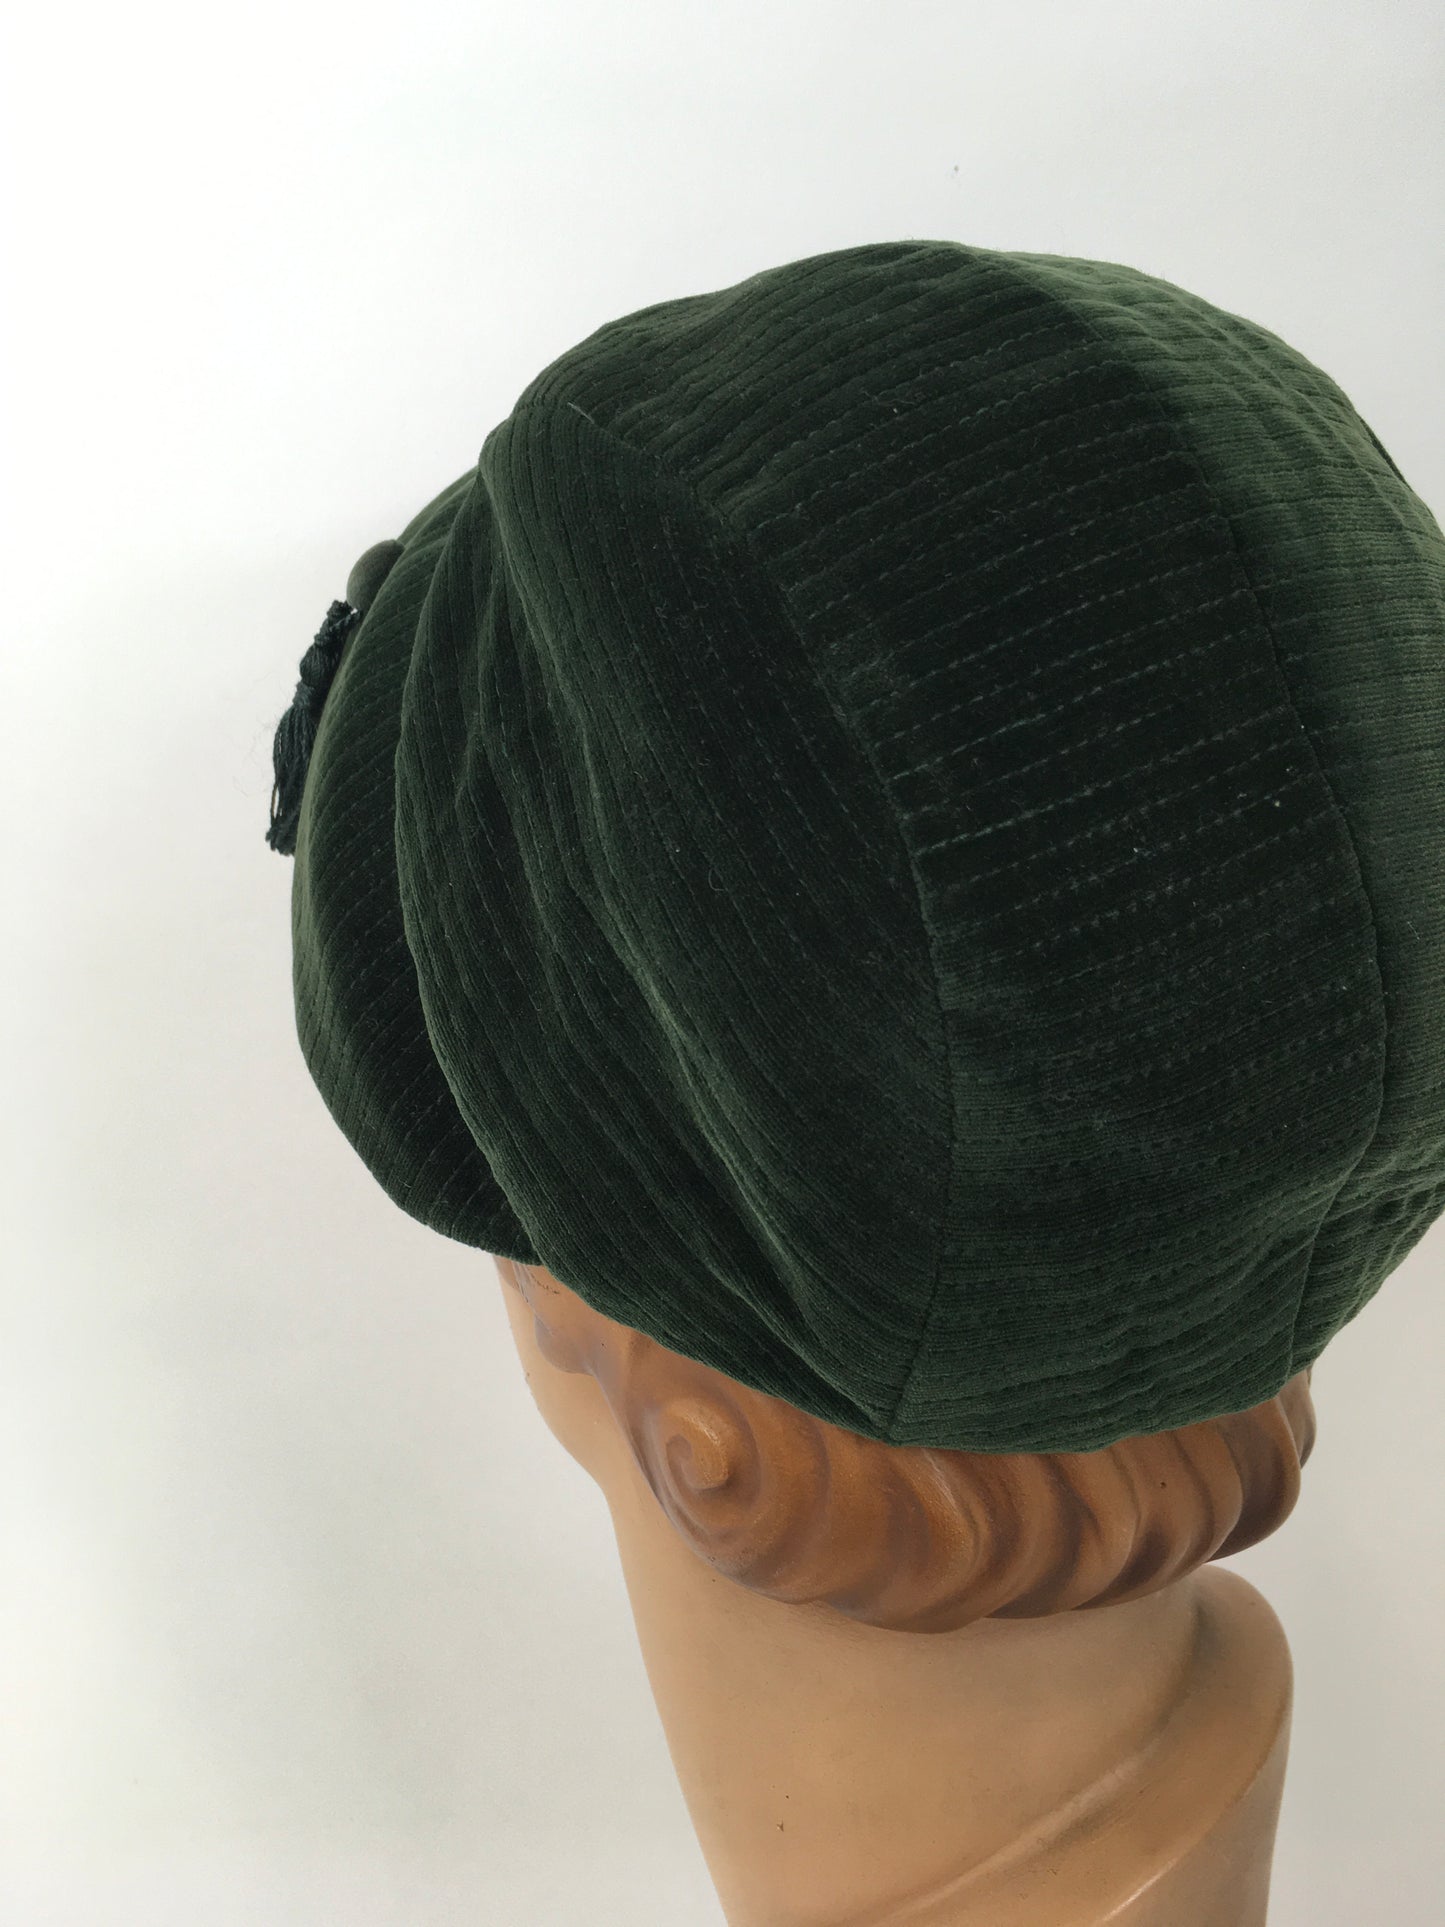 Original 1930’s Fabulous Sportswear Hat - In A Divine Rich Green Velvet with Tassel